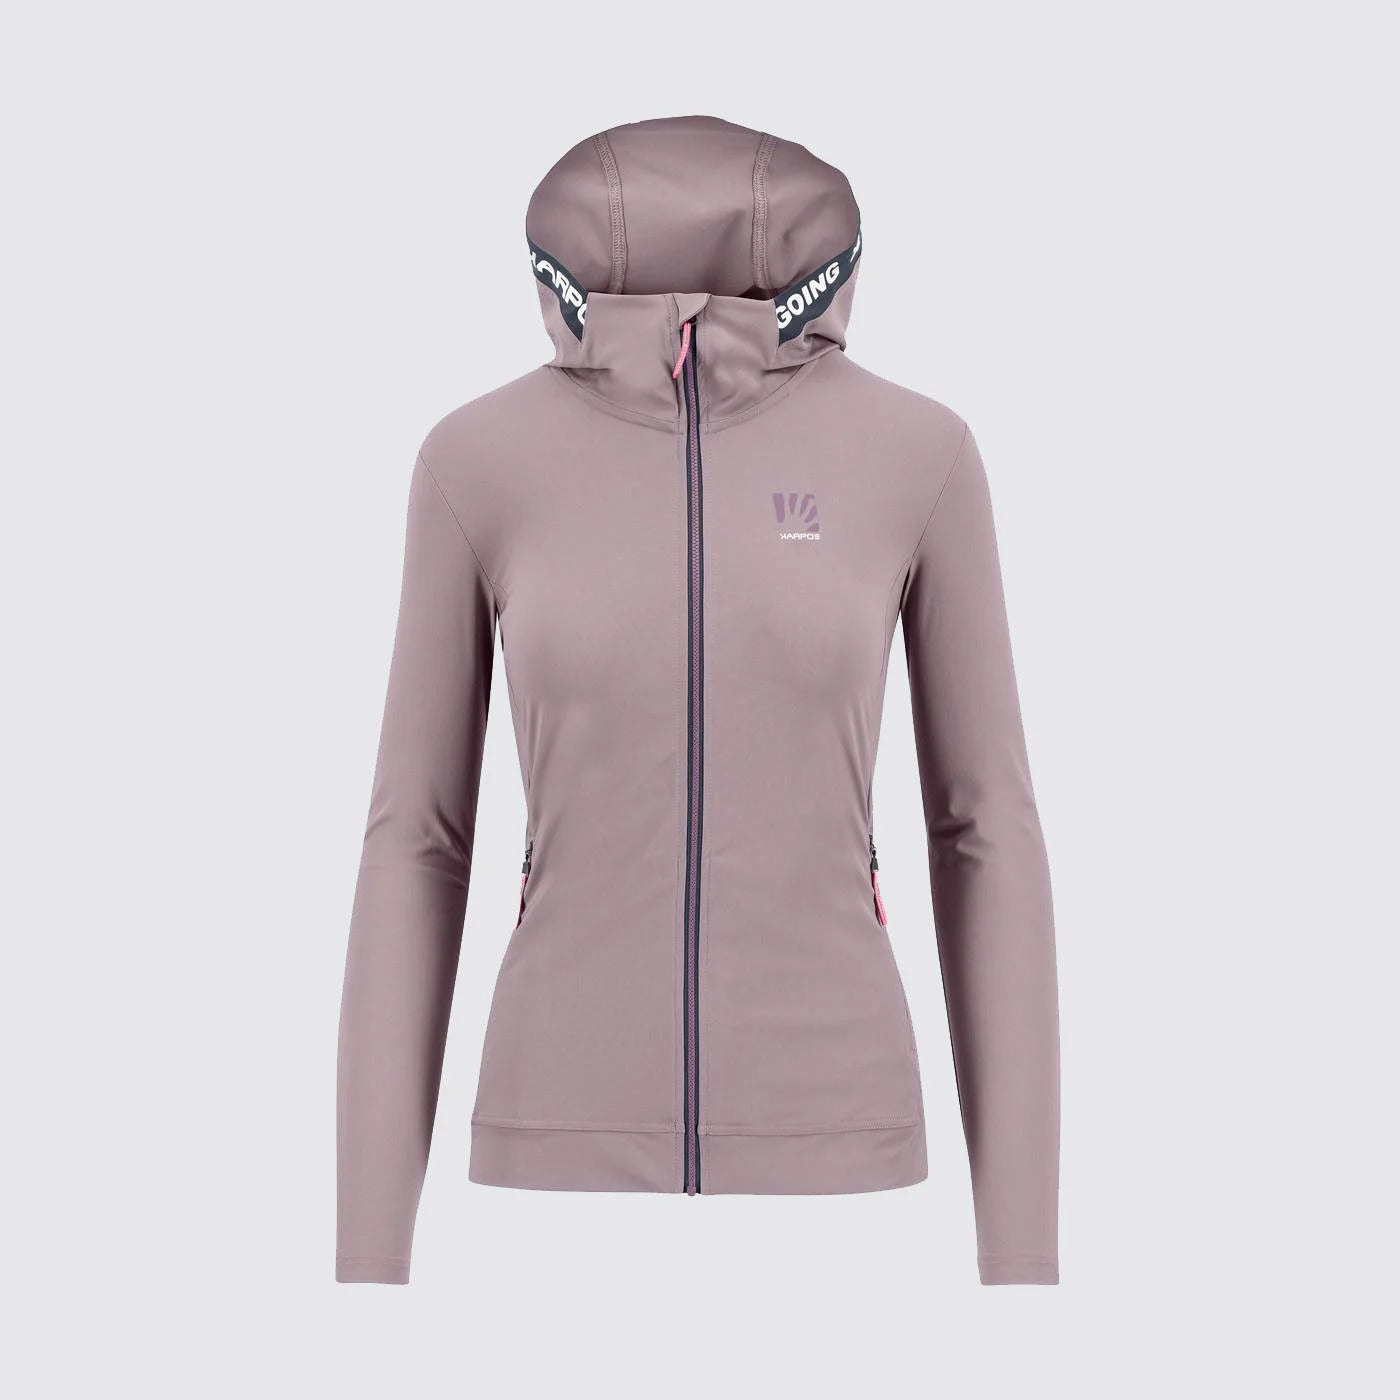 Esasyfrizz full-zip hoodie